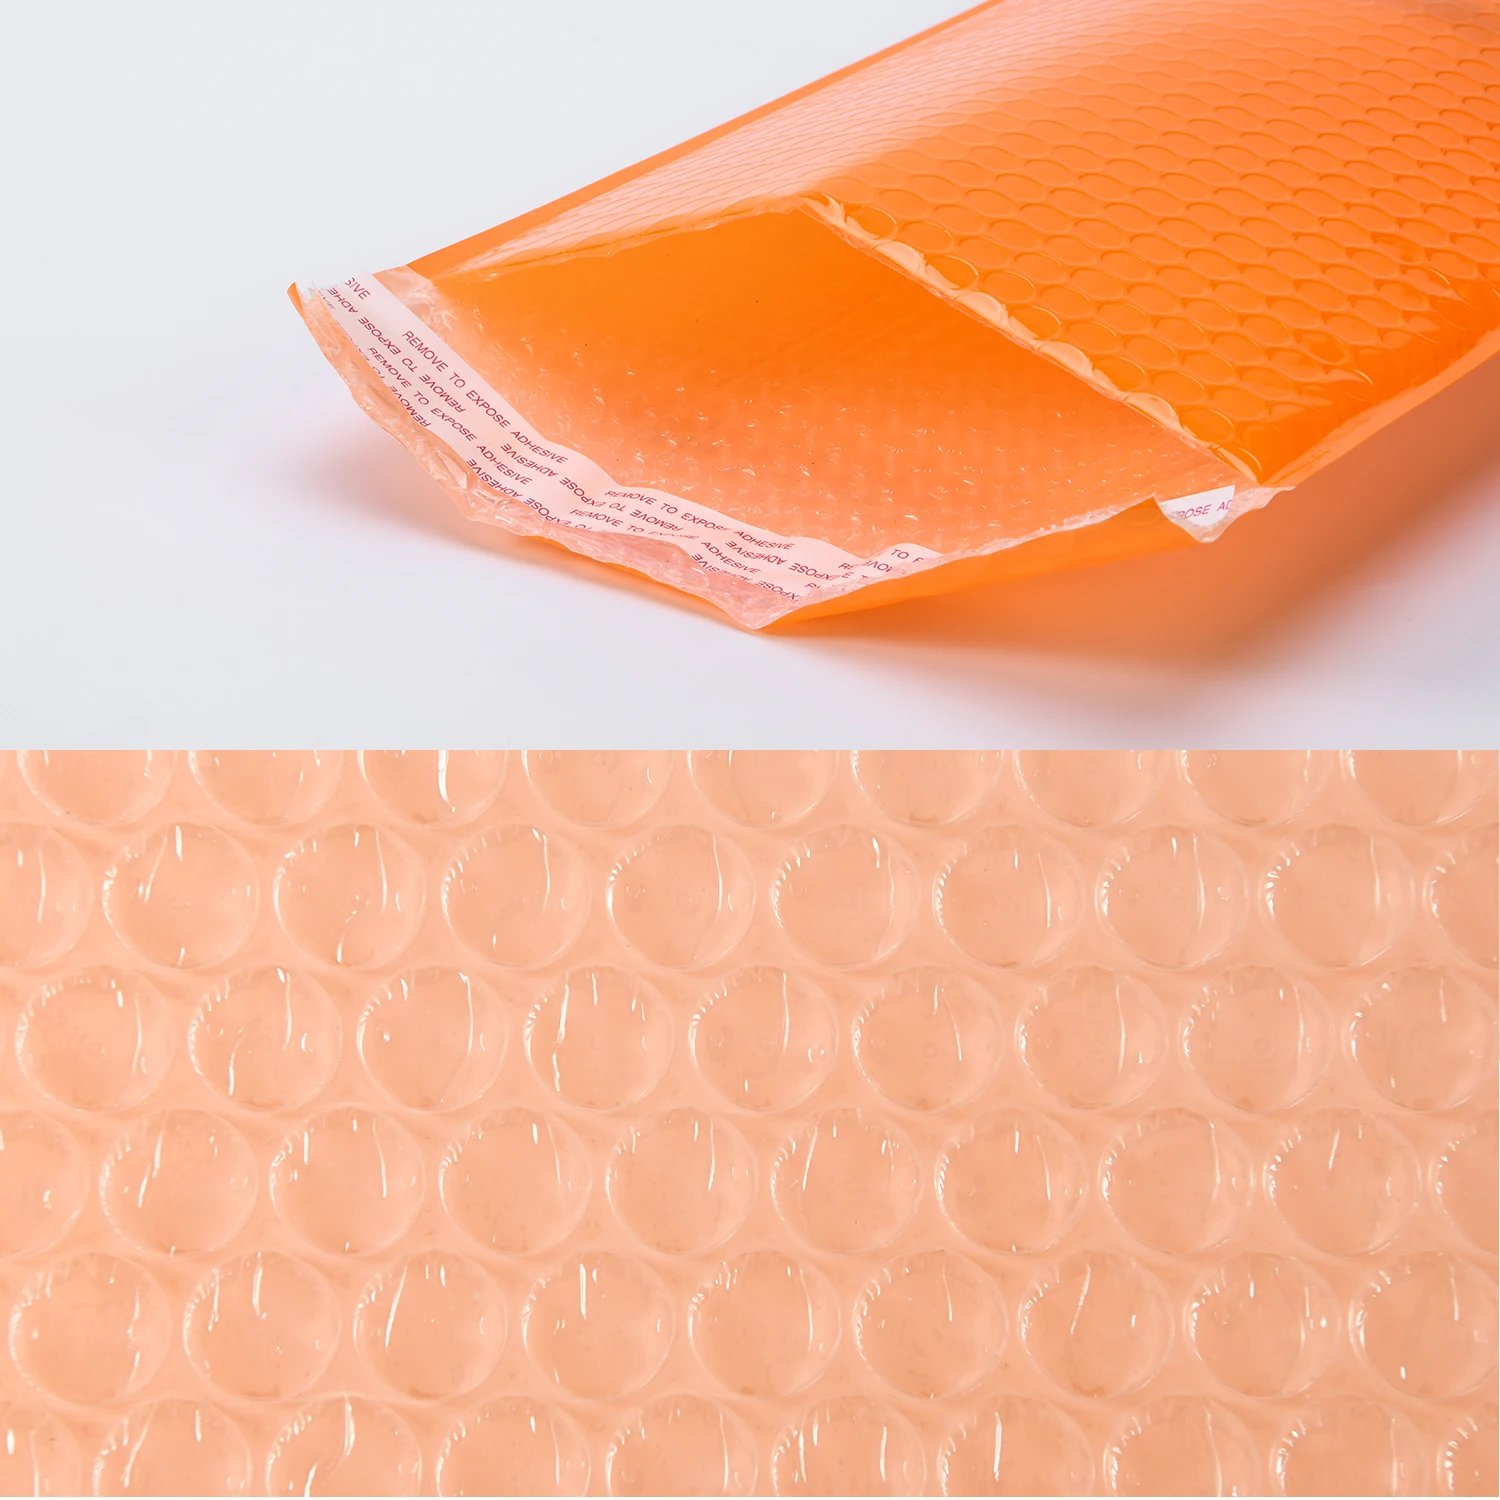 TONESPAC 190*260 мм 50 шт. пузырьковая почтовая отправка Мягкий Конверт самозапечатывающаяся Упаковка водонепроницаемый почтовый пакет оранжевый